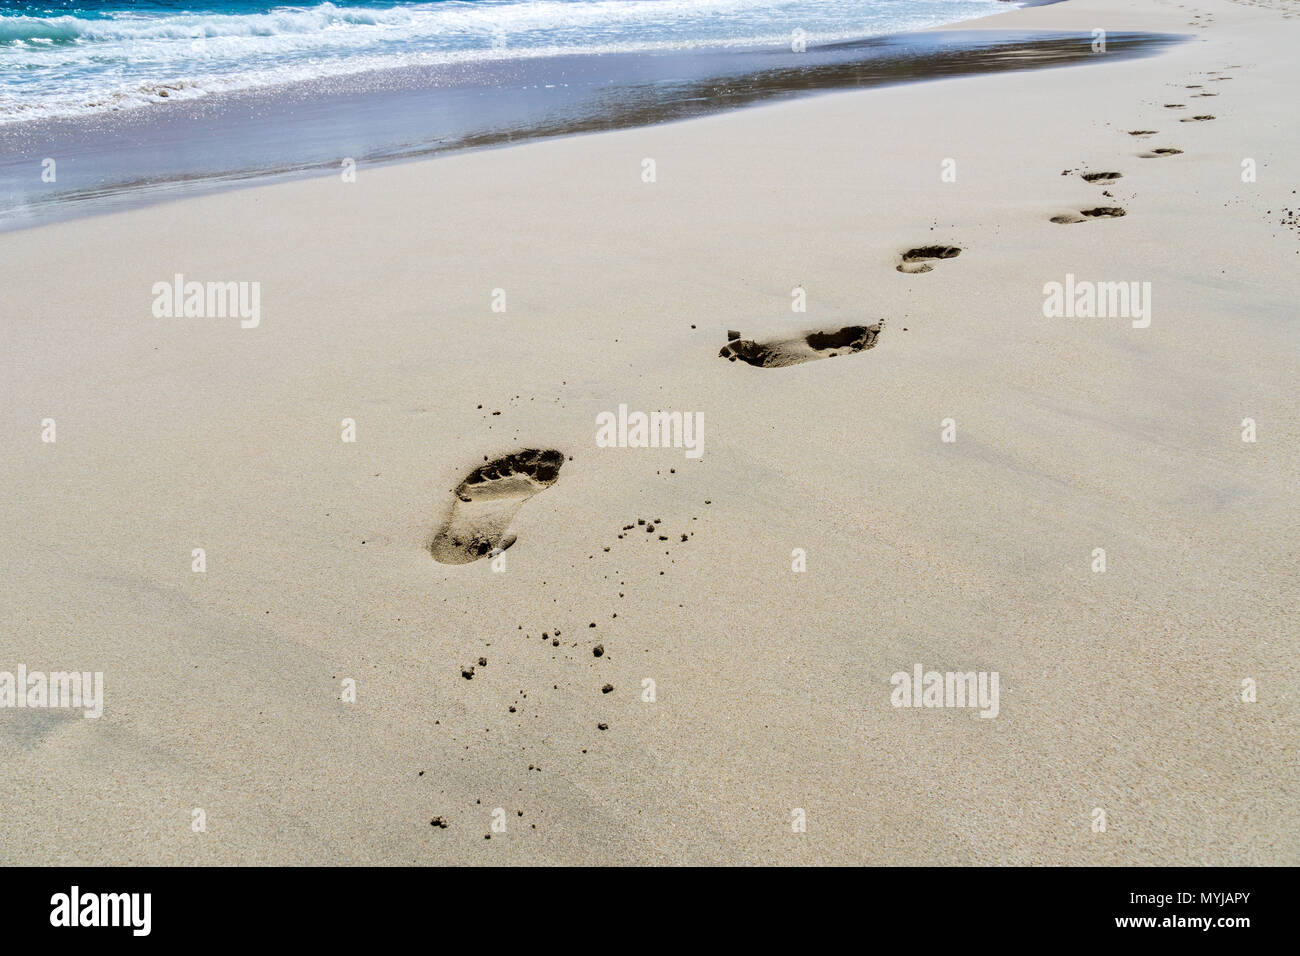 Mallorca, Footmark in sand beach while sun shines Stock Photo